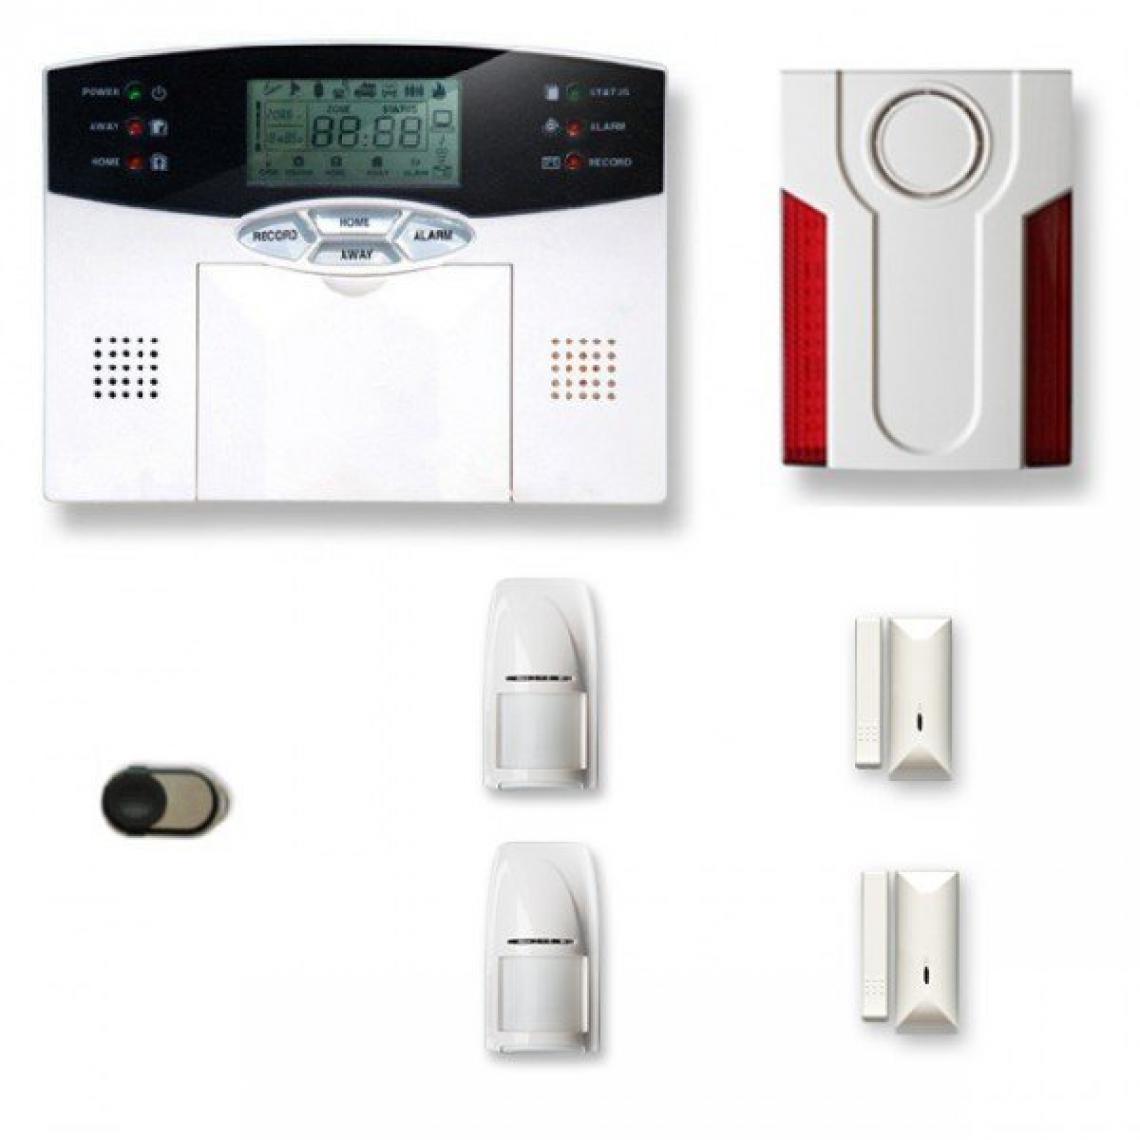 Tike Securite - Alarme maison sans fil MN29 Compatible Box internet - Alarme connectée